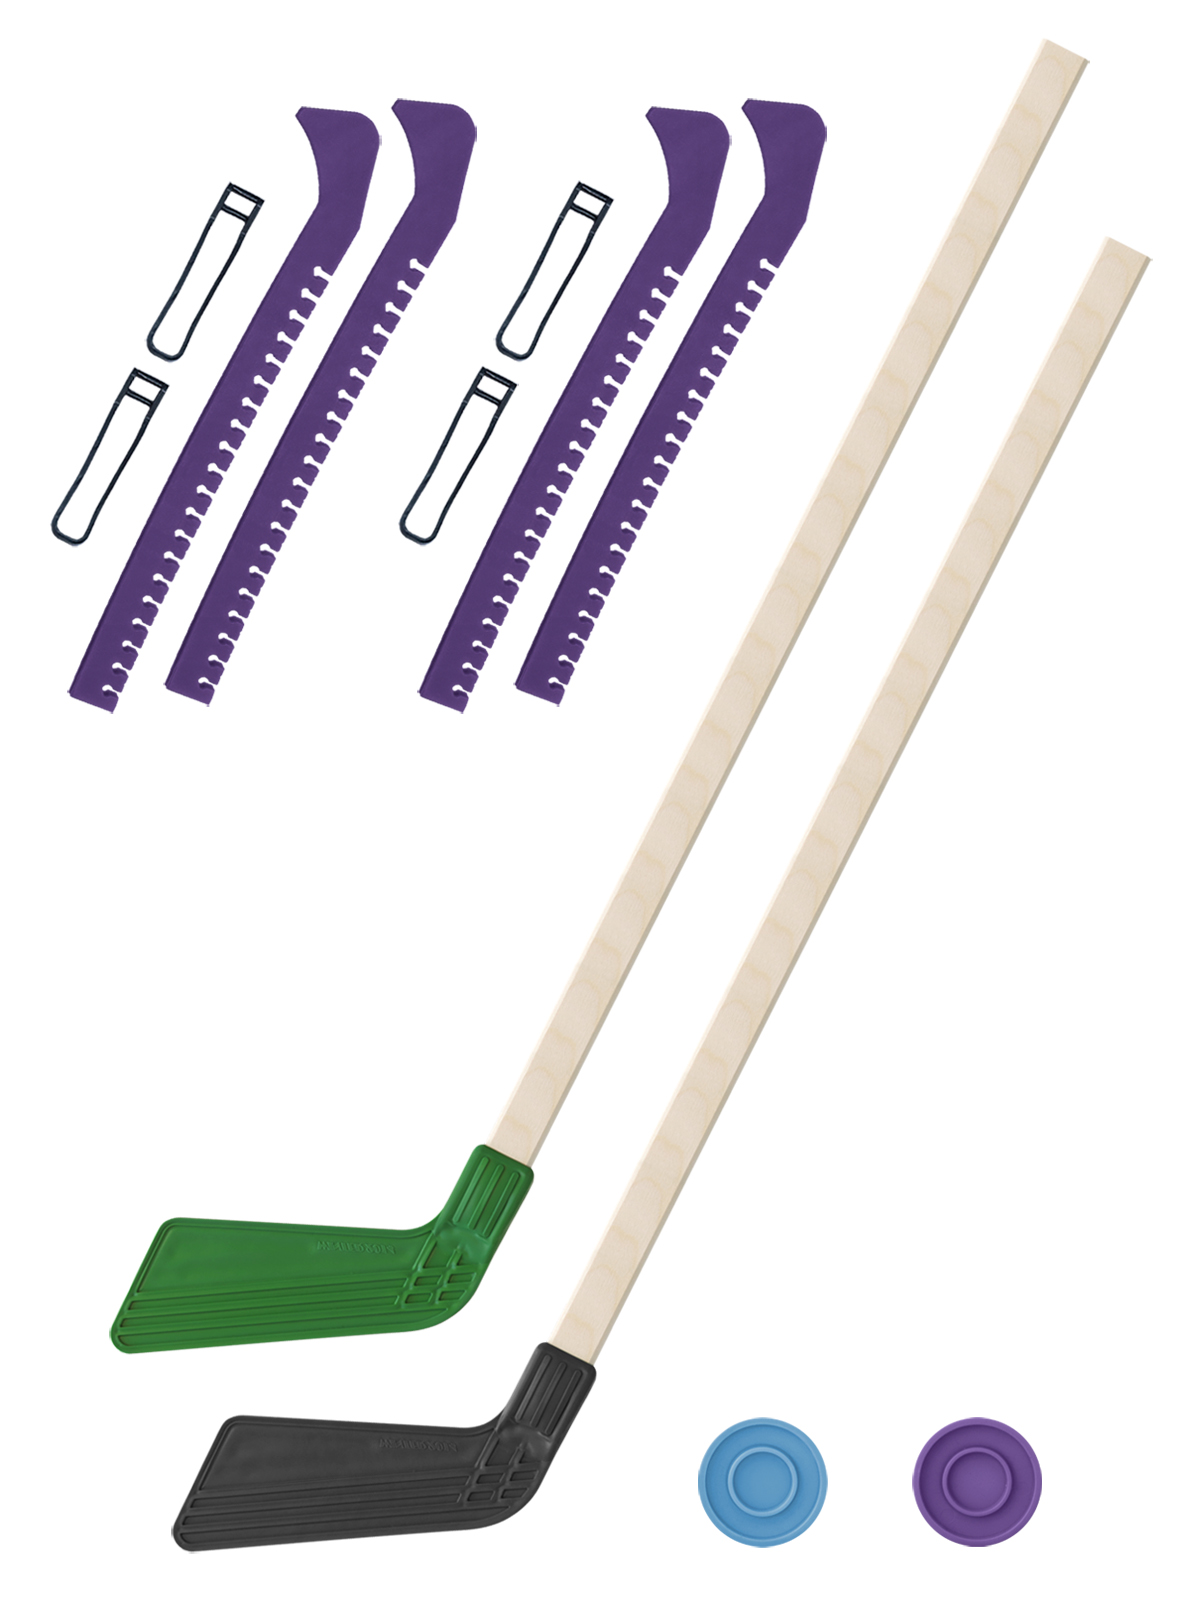 фото Клюшка хоккейная задира-плюс 2 шт зел. и чер.+2 шайбы + чехлы для коньков фиолетовые 2 шт.